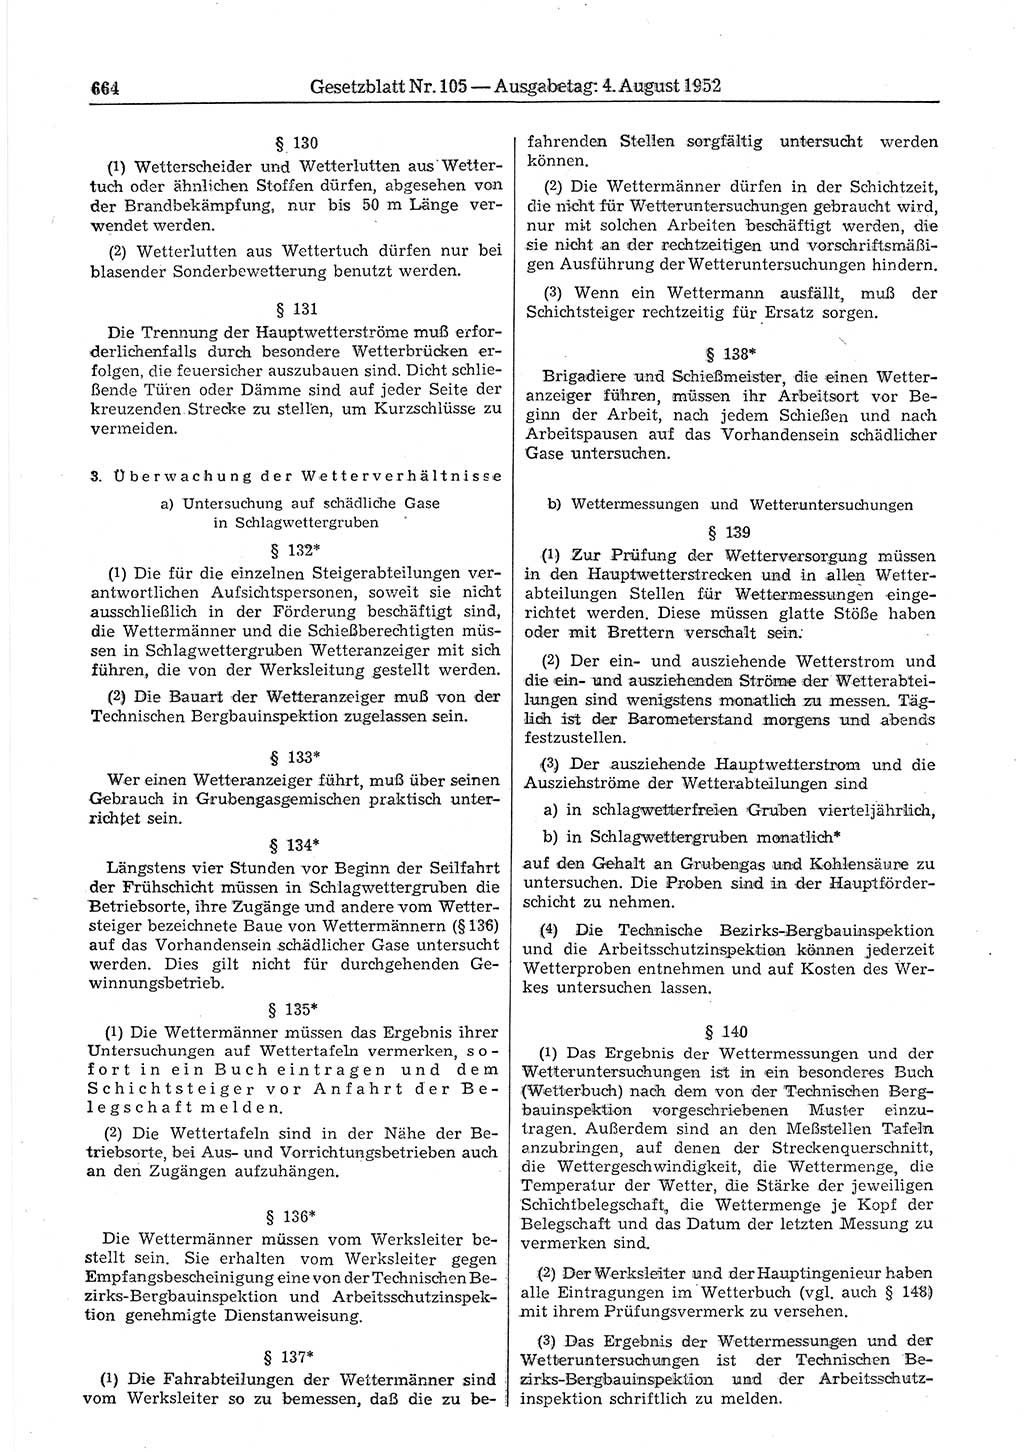 Gesetzblatt (GBl.) der Deutschen Demokratischen Republik (DDR) 1952, Seite 664 (GBl. DDR 1952, S. 664)